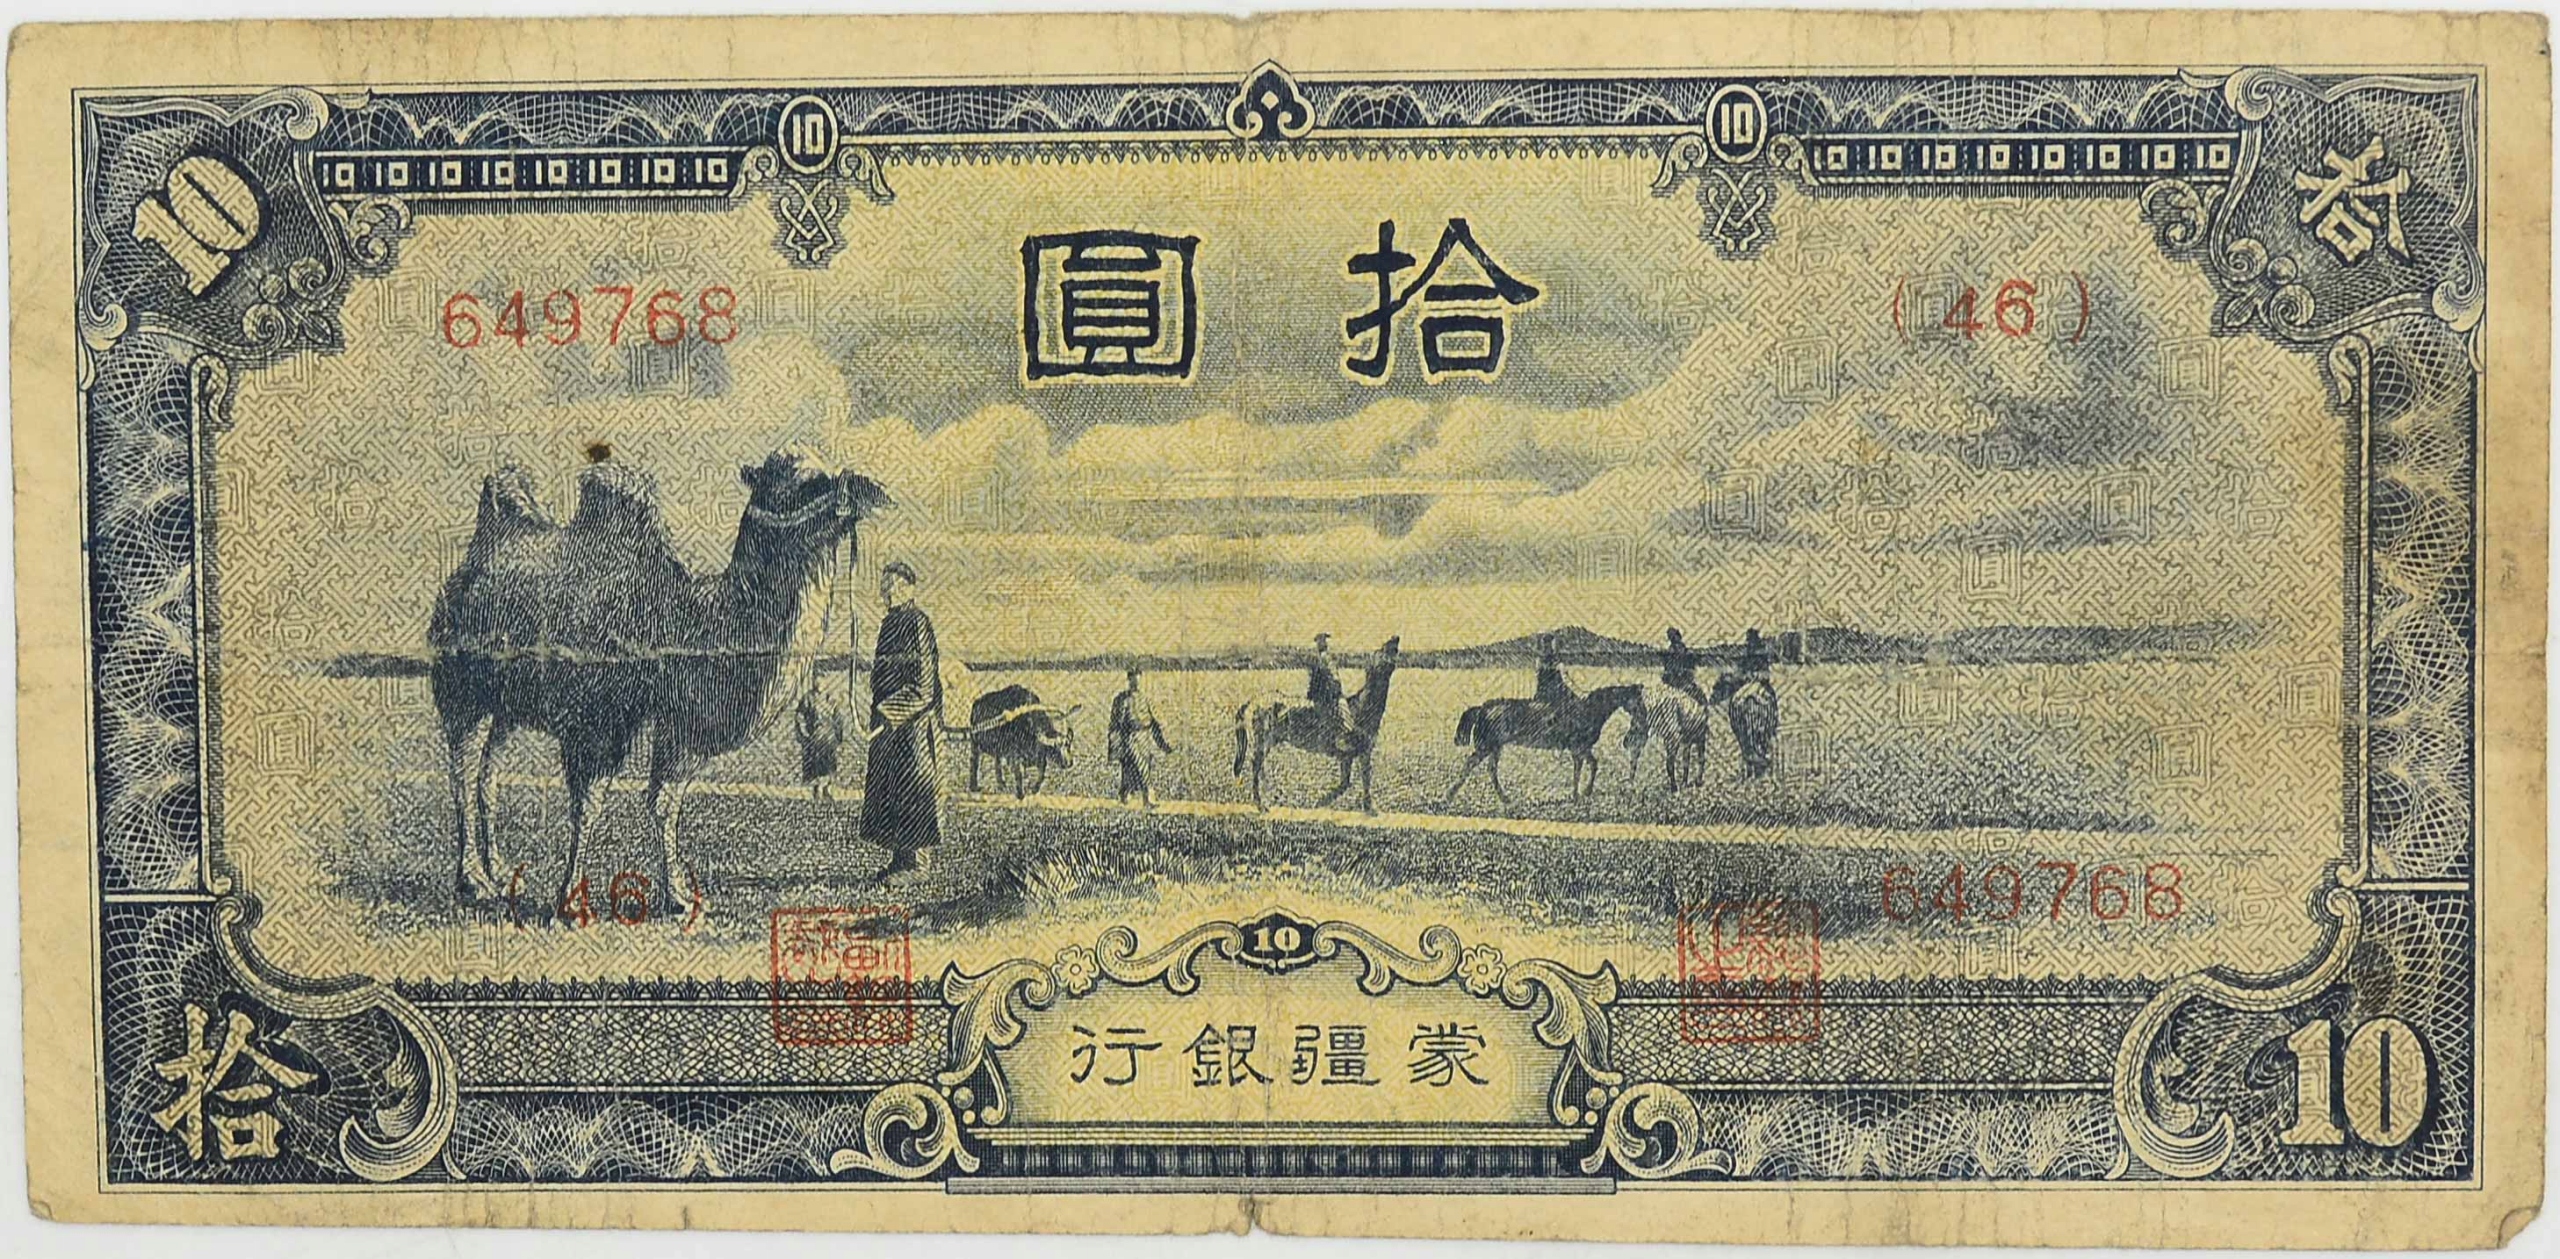 200 тысяч юаней. 10 Юаней Маньчжурия банкнота. 1944 Юаней. Китай 1944. 10 Юаней 1938 Китай японская оккупация.